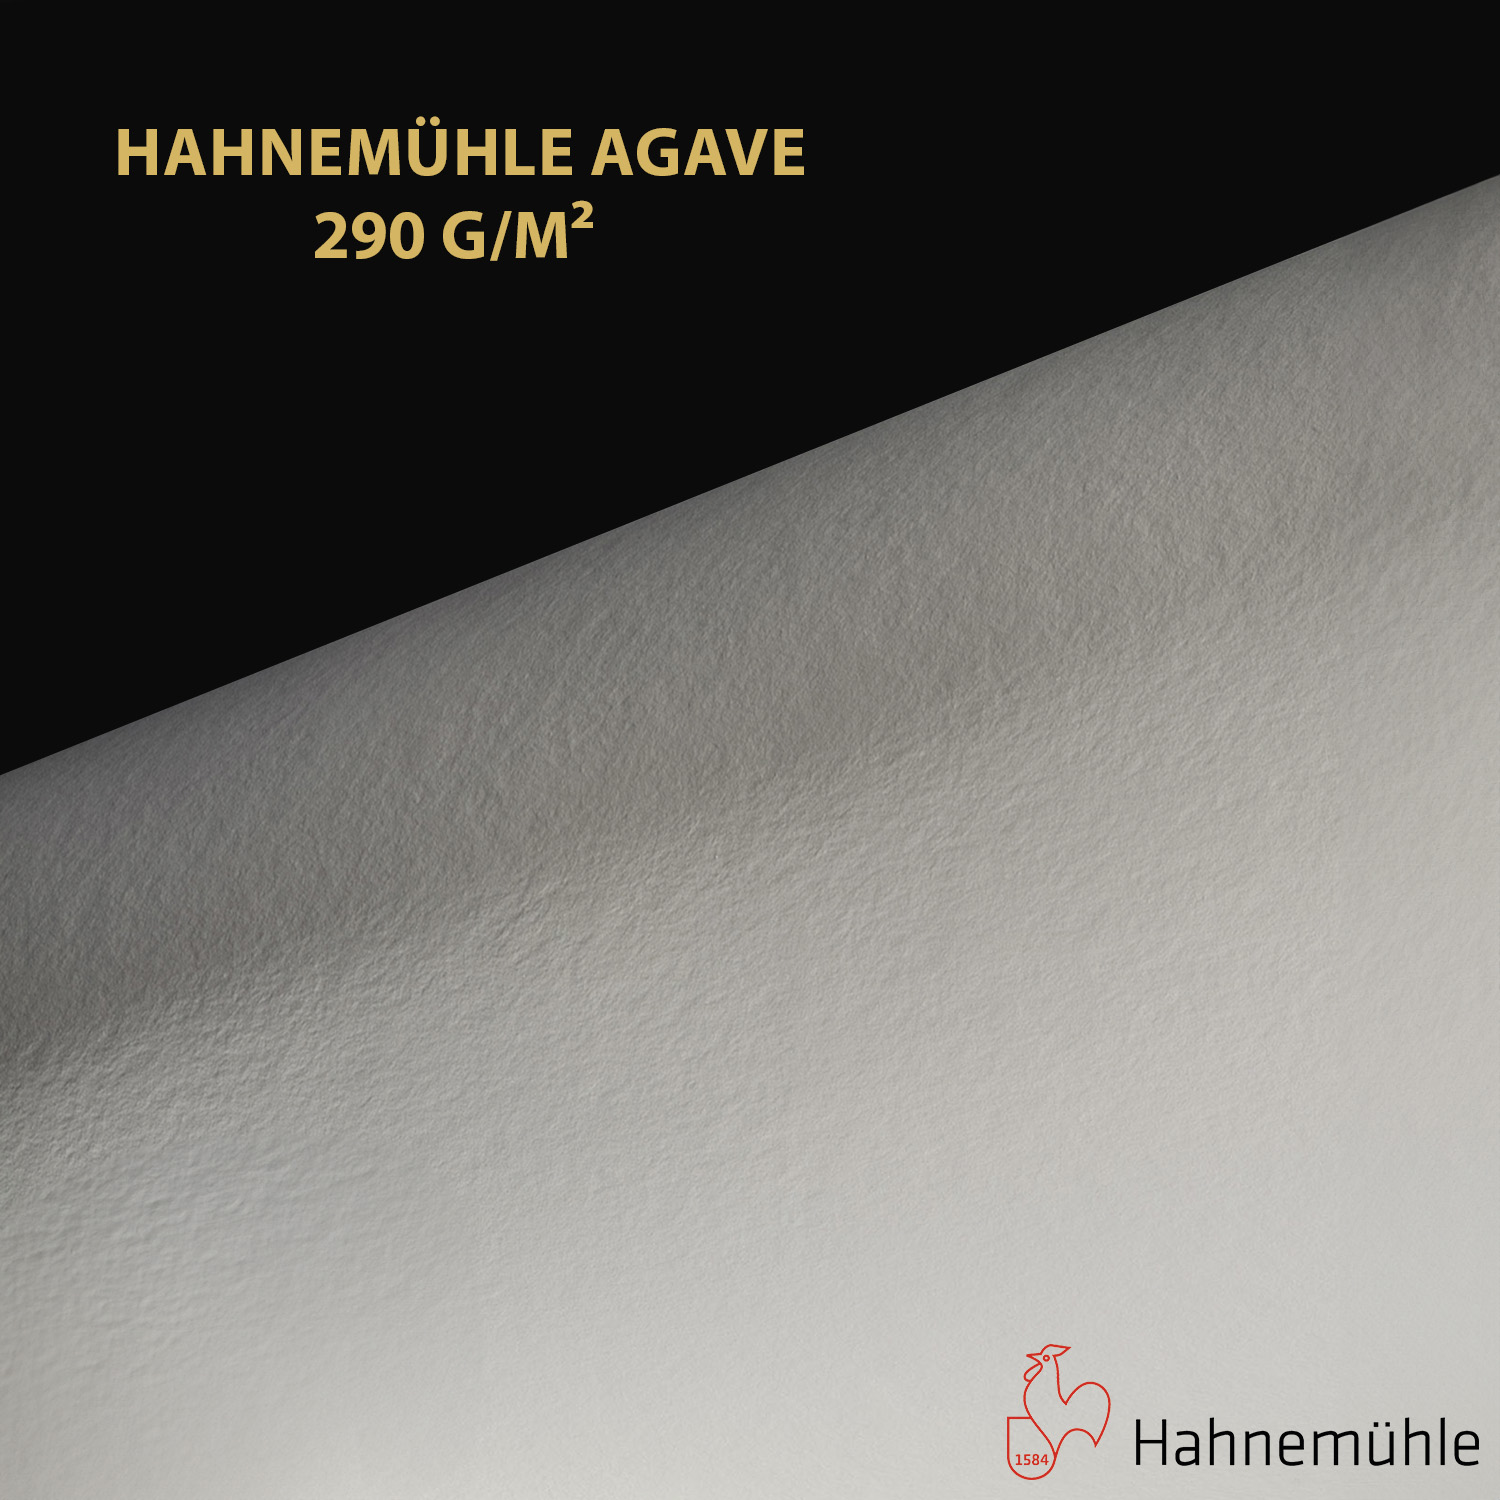 Impression et tirage Fineart pigmentaire sur papier Hahnemuhle Agave 290 à Montpellier